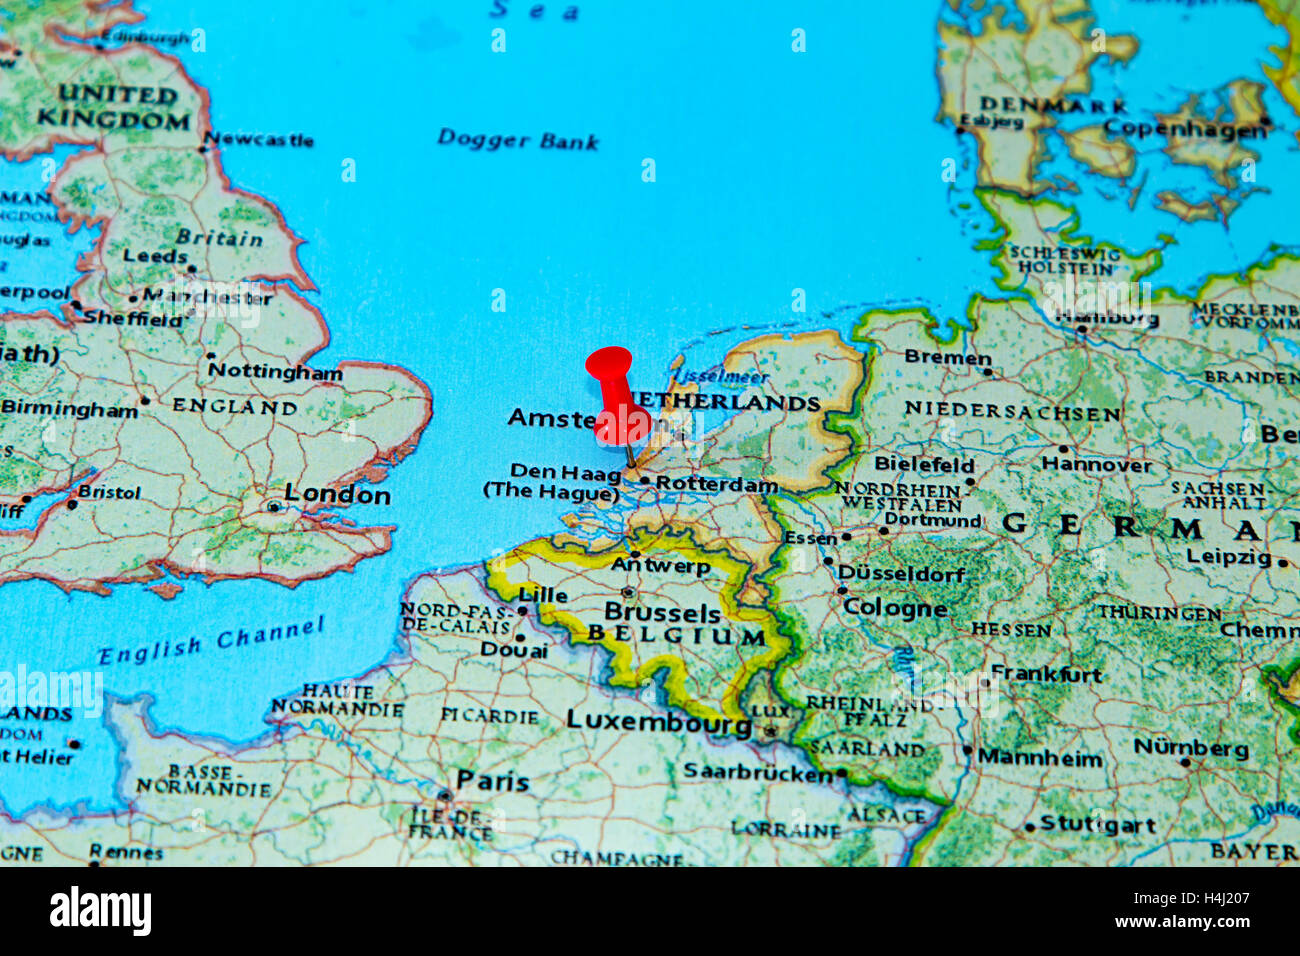 La Haye, Pays-Bas épinglée sur une carte de l'Europe Photo Stock - Alamy